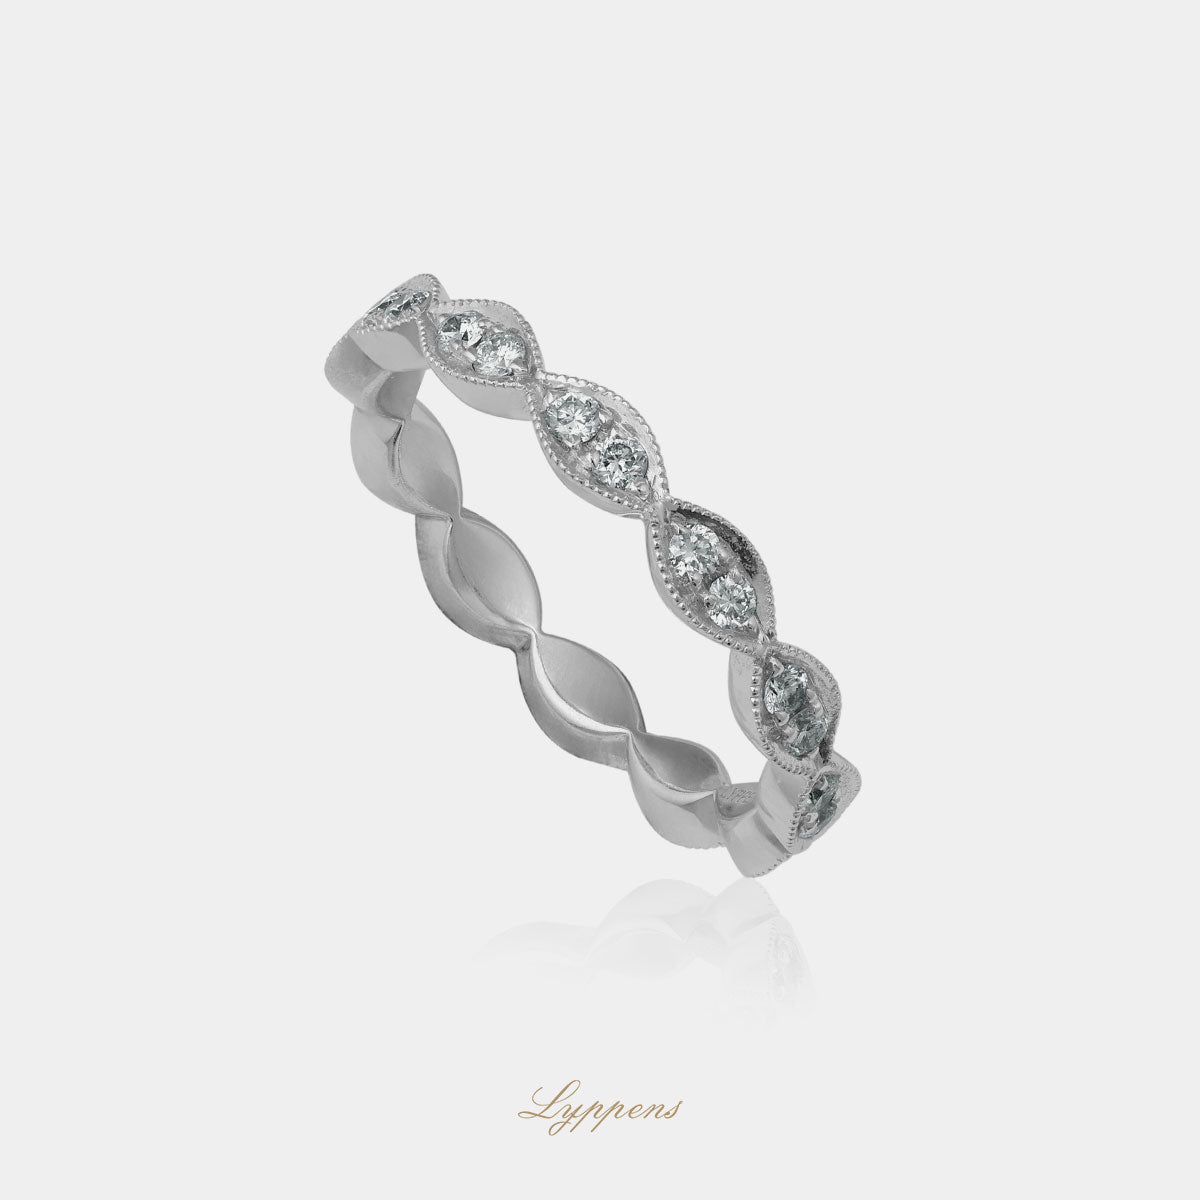 Witgouden alliance ring gezet met briljant geslepen diamant met een totaalgewicht van 0.44ct.